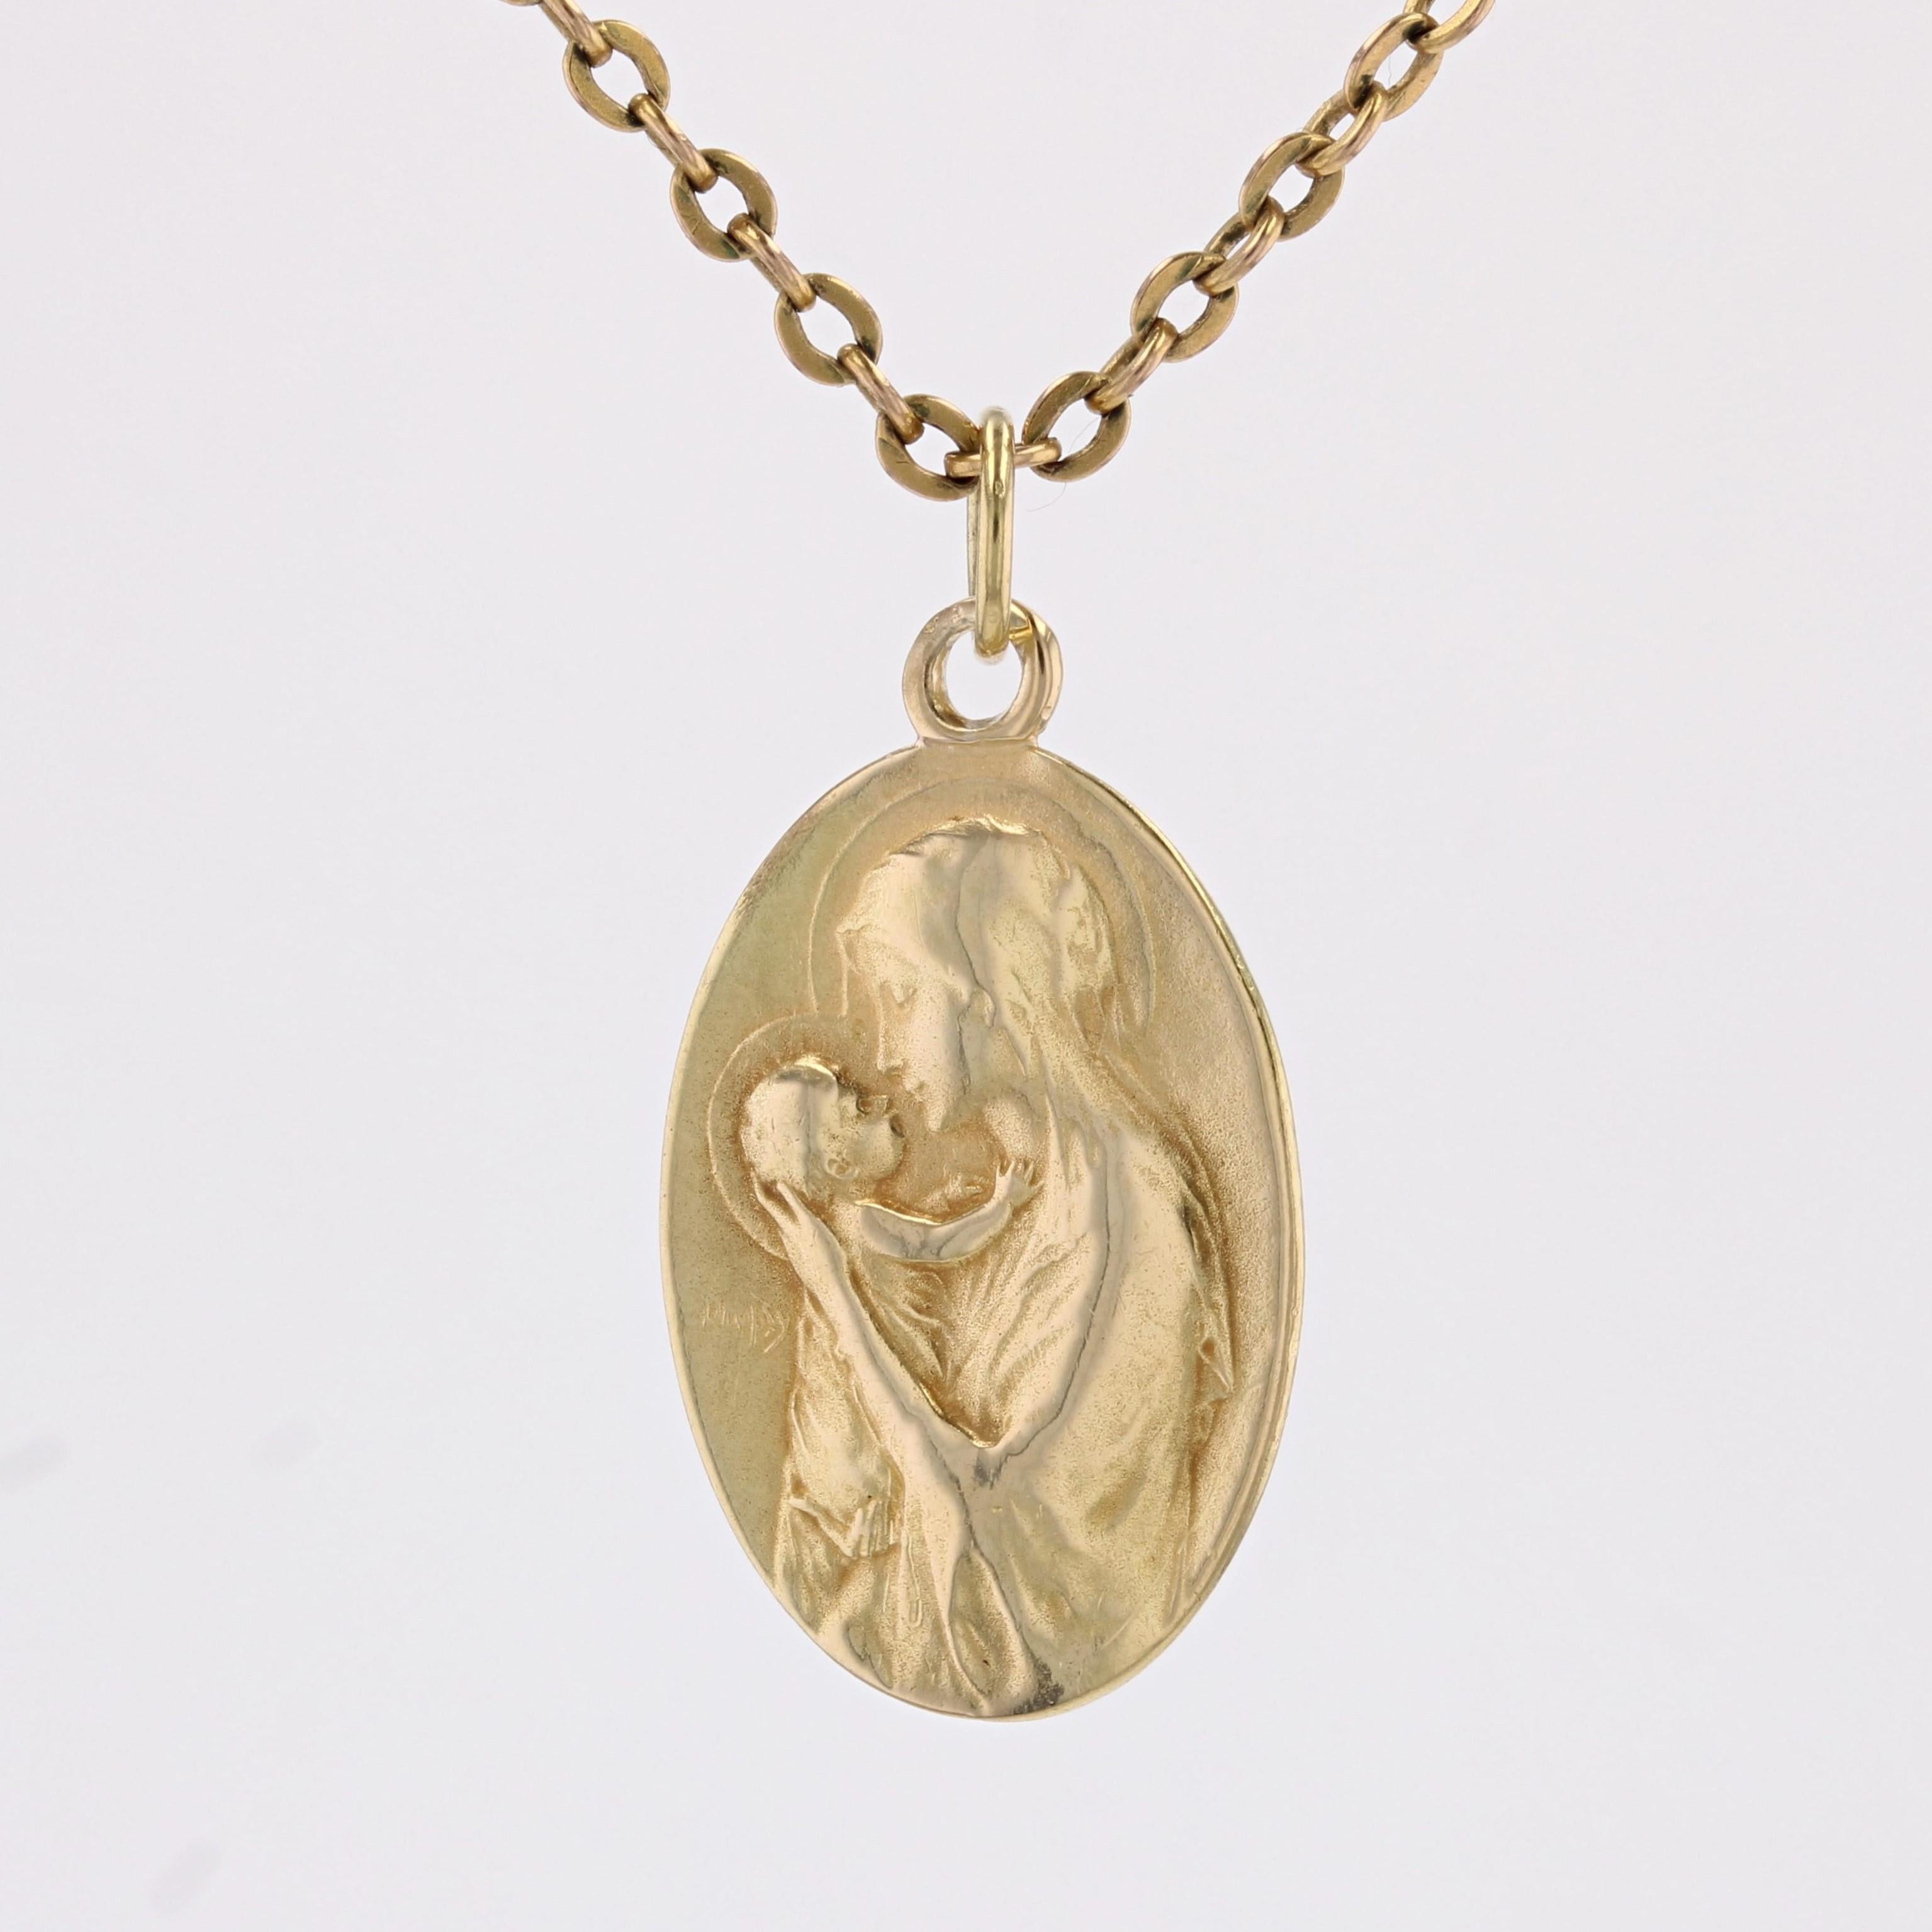 Médaille en or jaune 18 carats.
Ravissante médaille ancienne de forme ovale représentant la Vierge Marie tenant l'Enfant Jésus dans ses bras. Il est décoré au dos des mots 